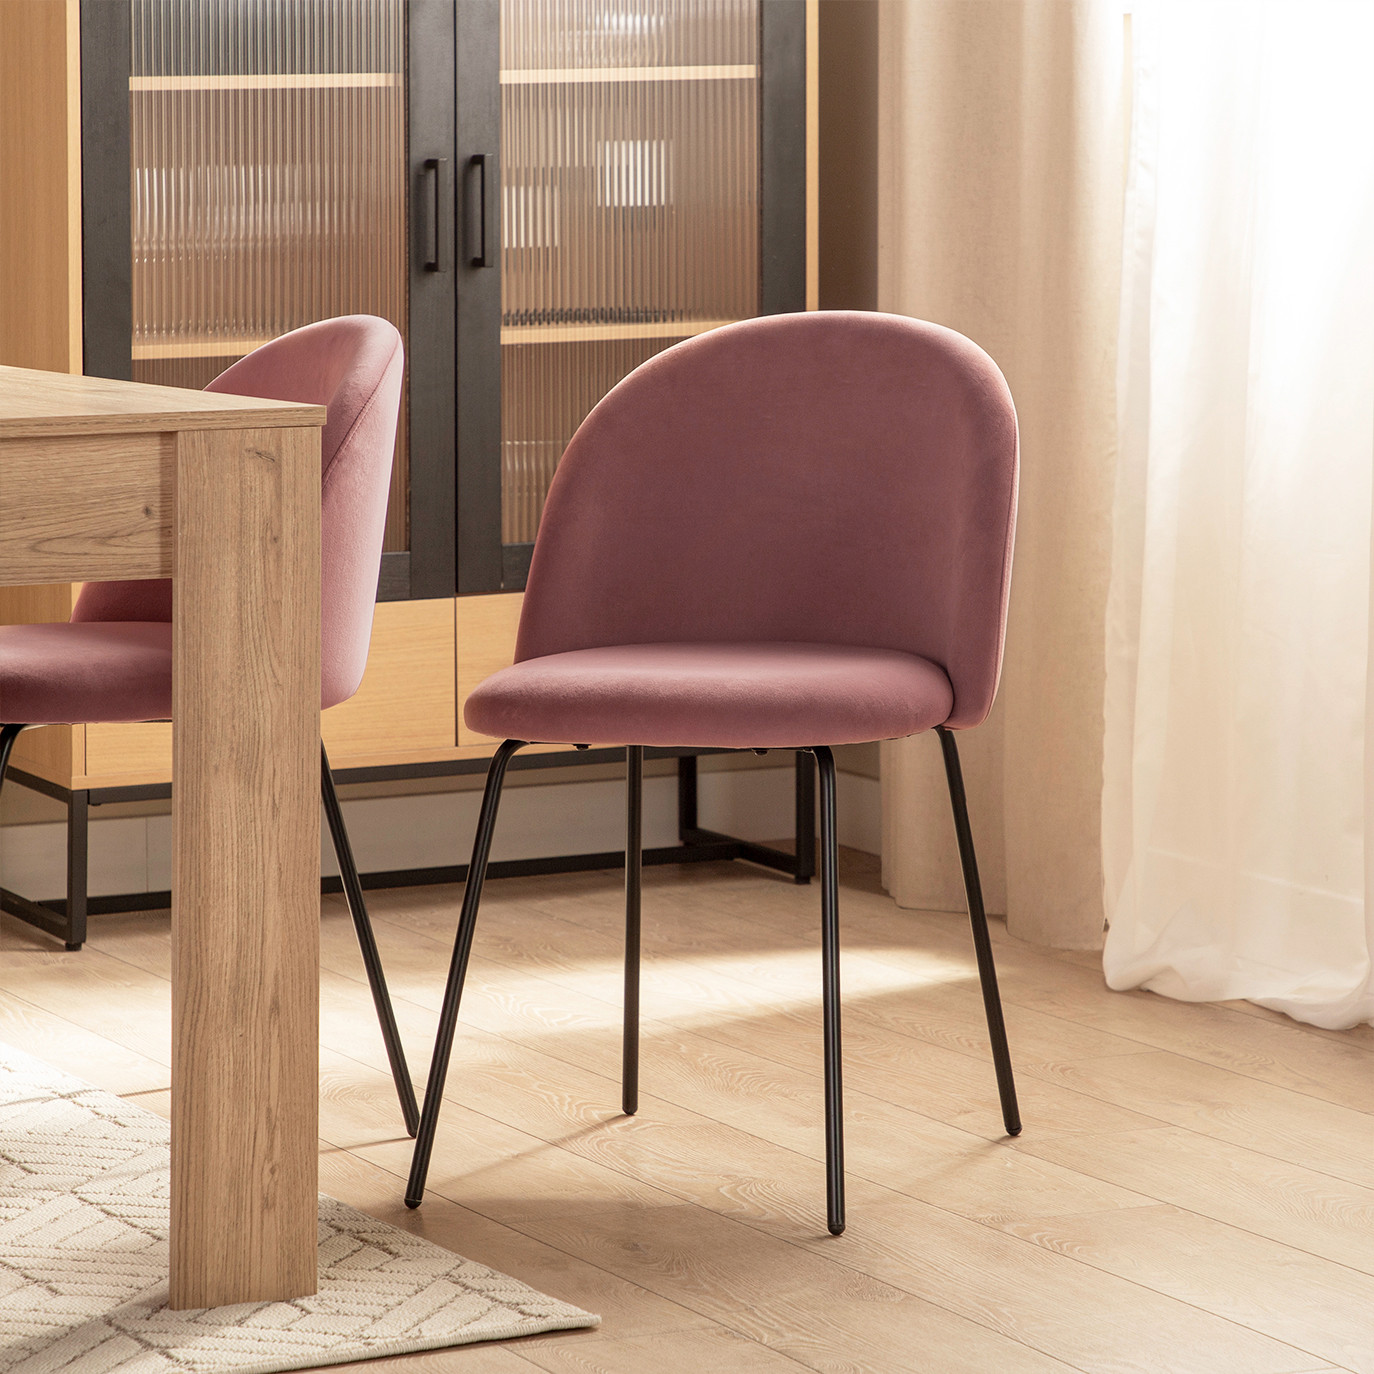 La silla de comedor Olivia en terciopelo rosa y pata metálica negra tiene un diseño elegante y sencillo inspirado en los años 50. Su respaldo corto y redondeado unido al diseño de sus patas cónicas despuntadas recuerdan a esos modelos de sillería sofisticados y funcionales adaptables a cualquier estilo.